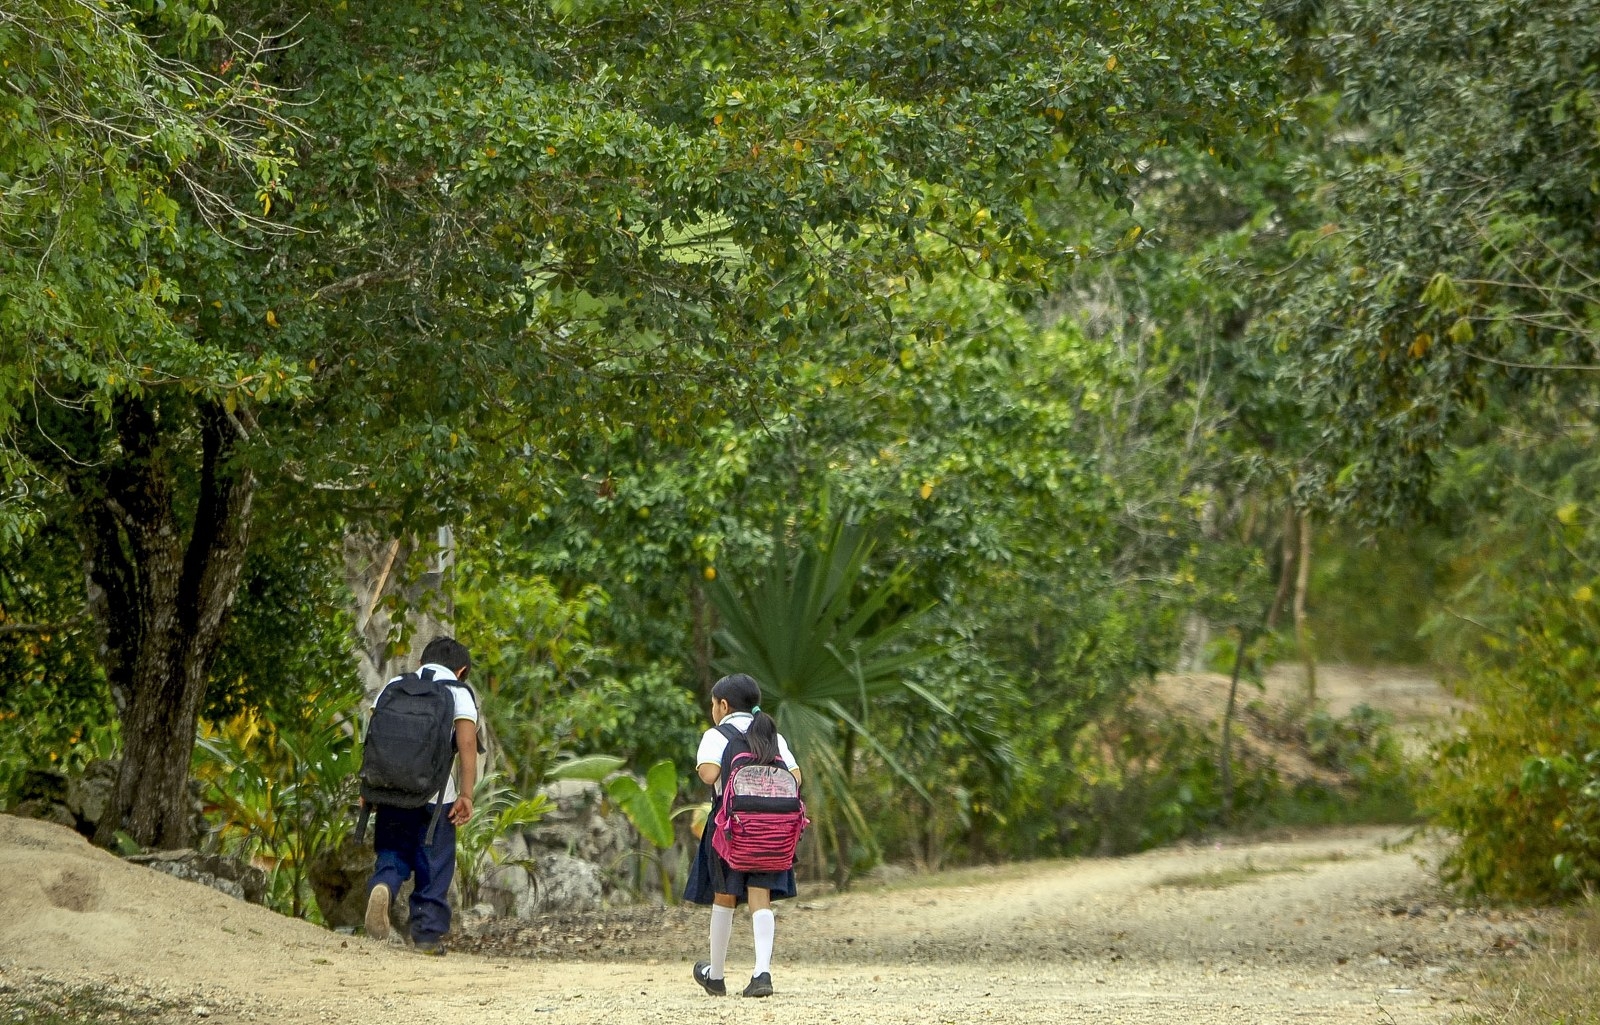 Lázaro Cárdenas queda fuera del presupuesto para la Educación en Quintana Roo: Sefiplan